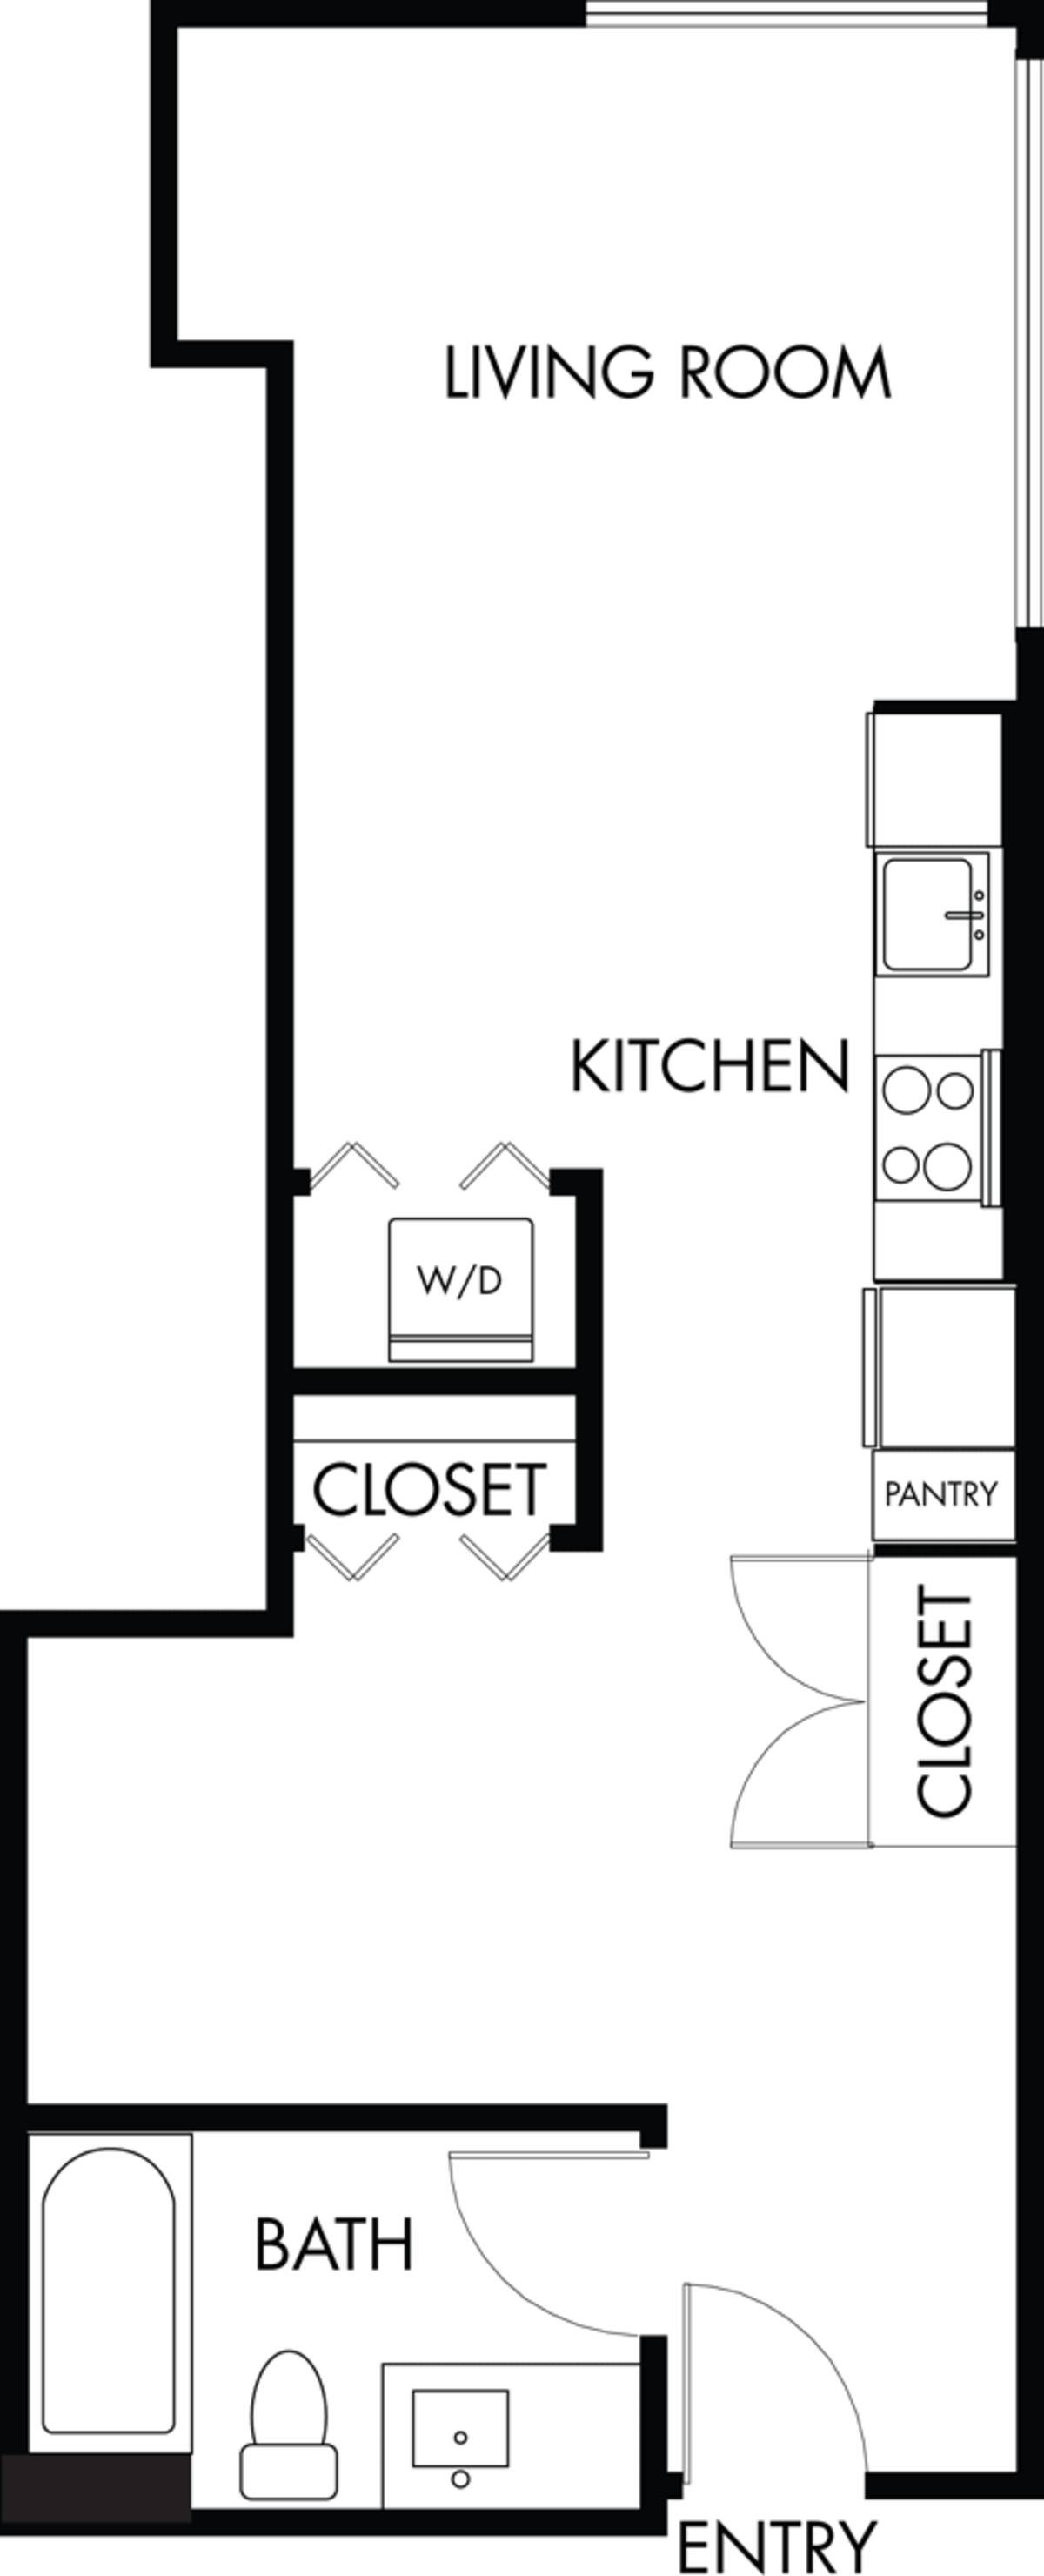 Floorplan diagram for S.7, showing Studio